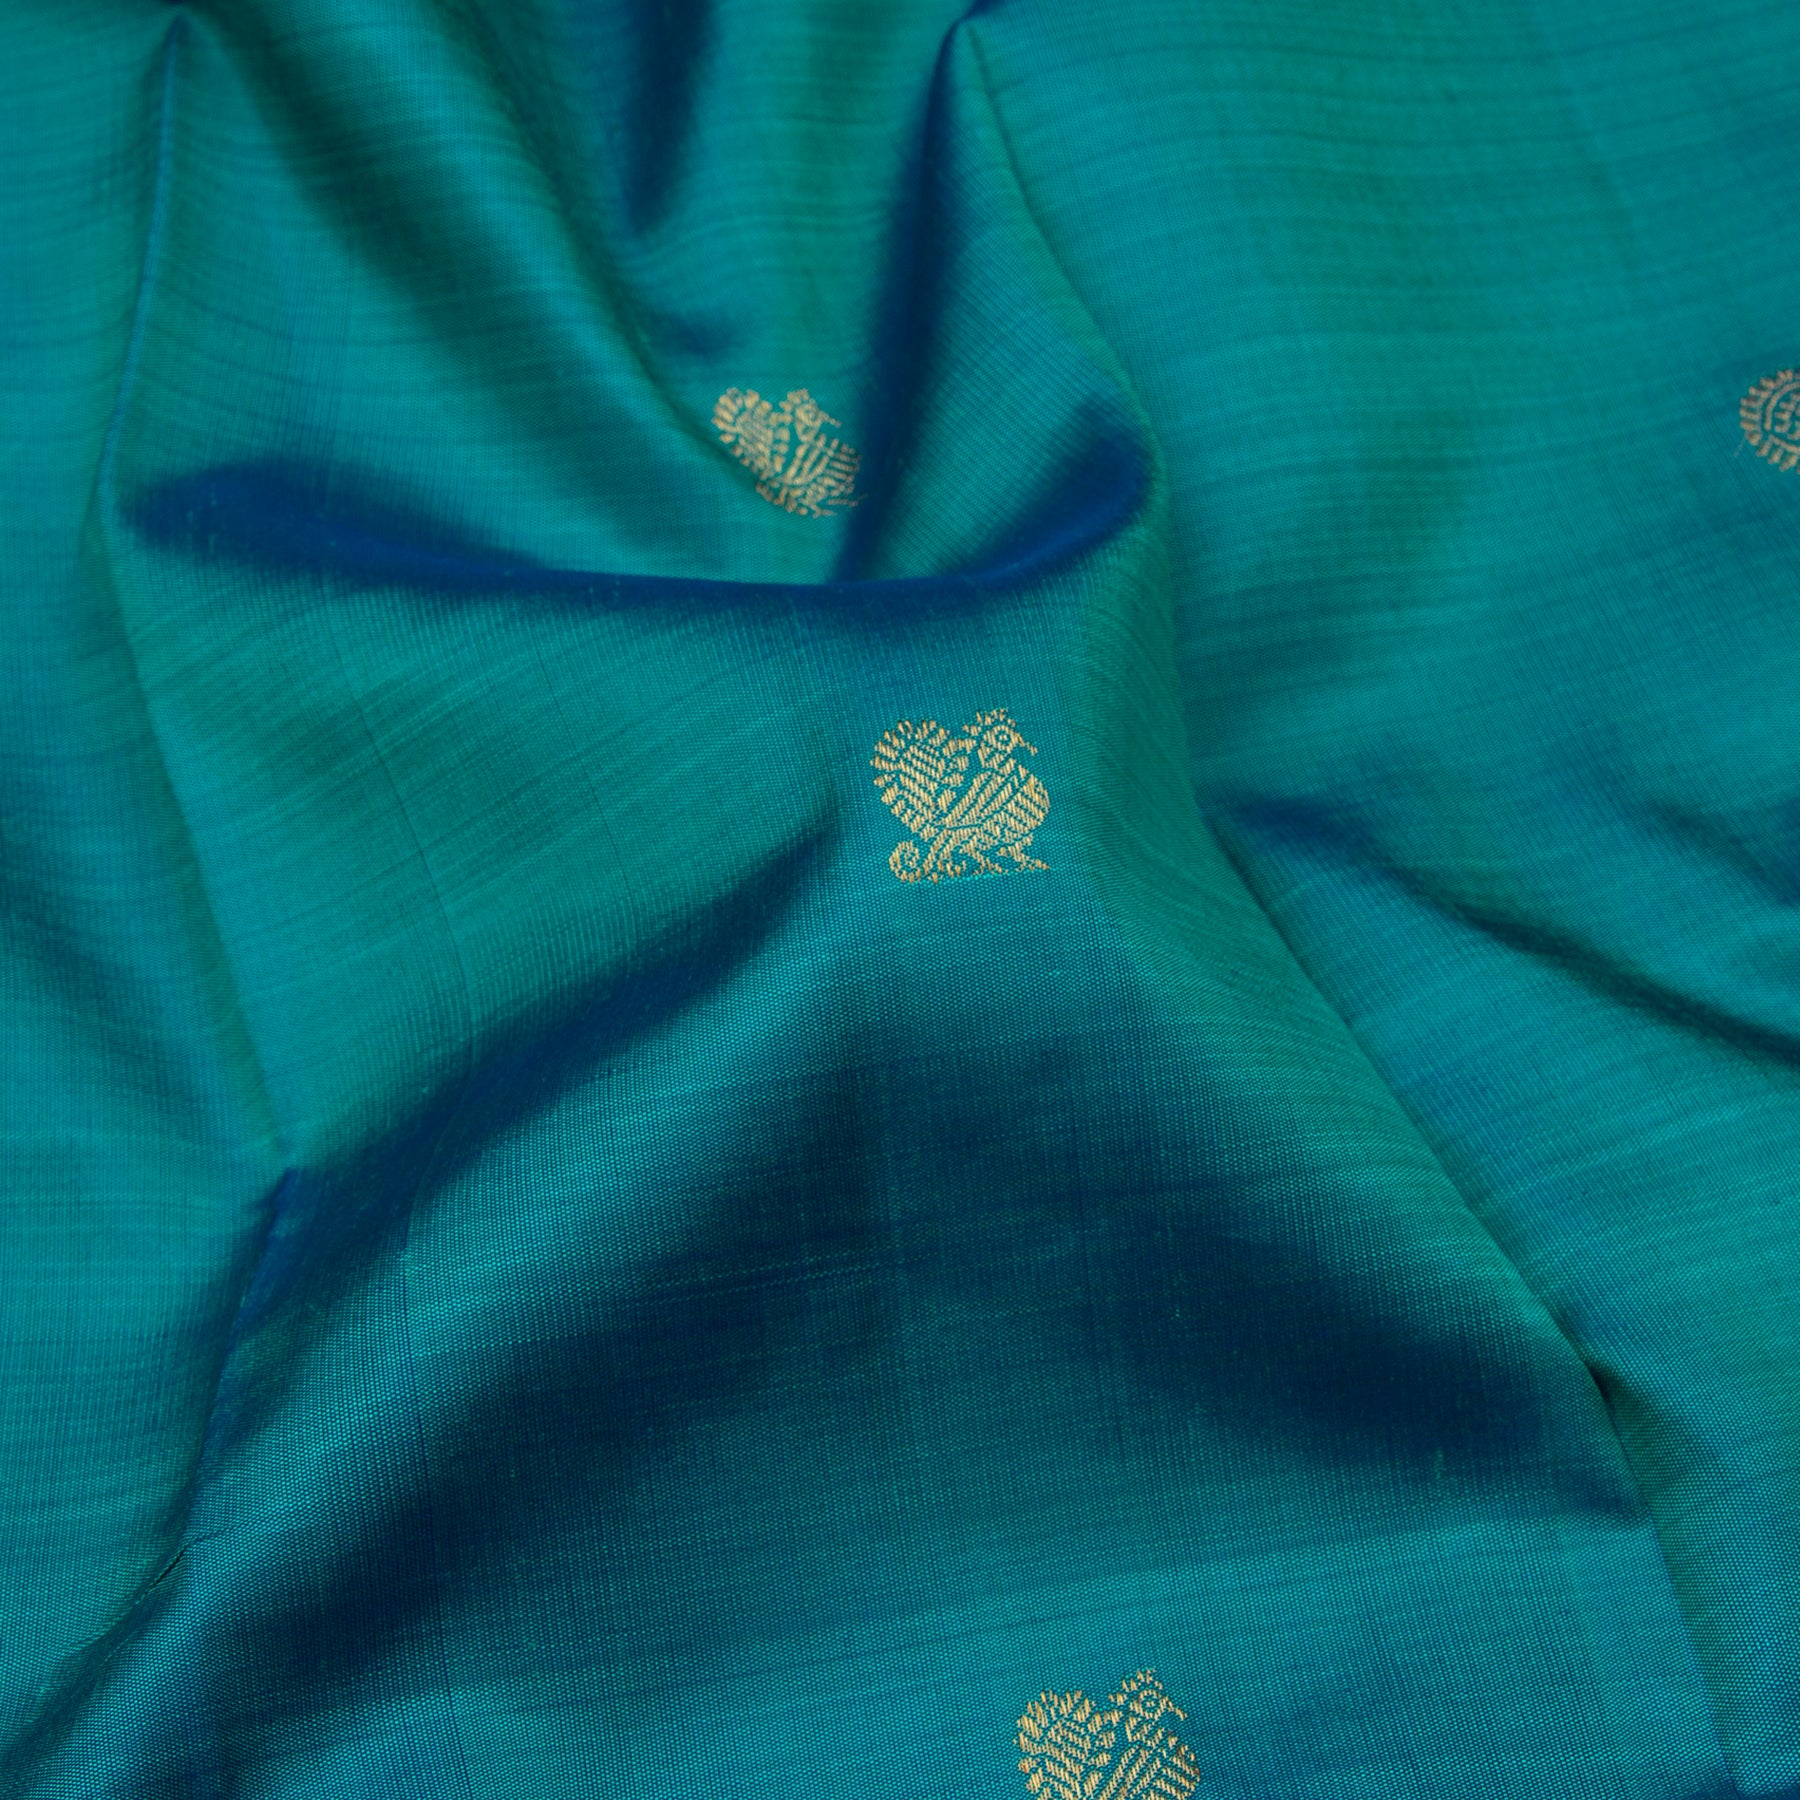 Kanakavalli Kanjivaram Silk Sari 22-110-HS001-07532 - Fabric View